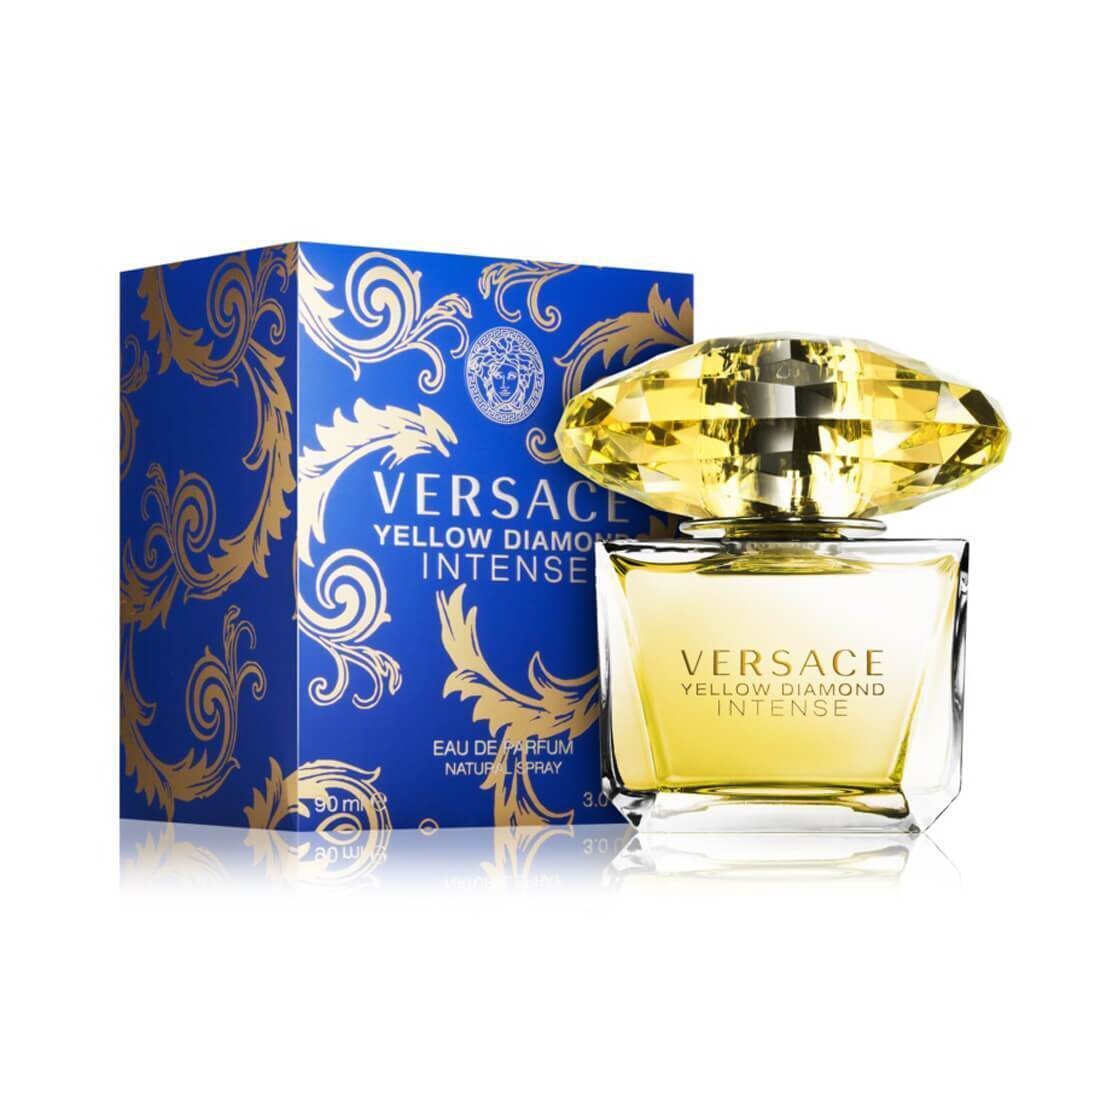 Versace Yellow Diamond Intense EDP Perfume For Women – 90ml